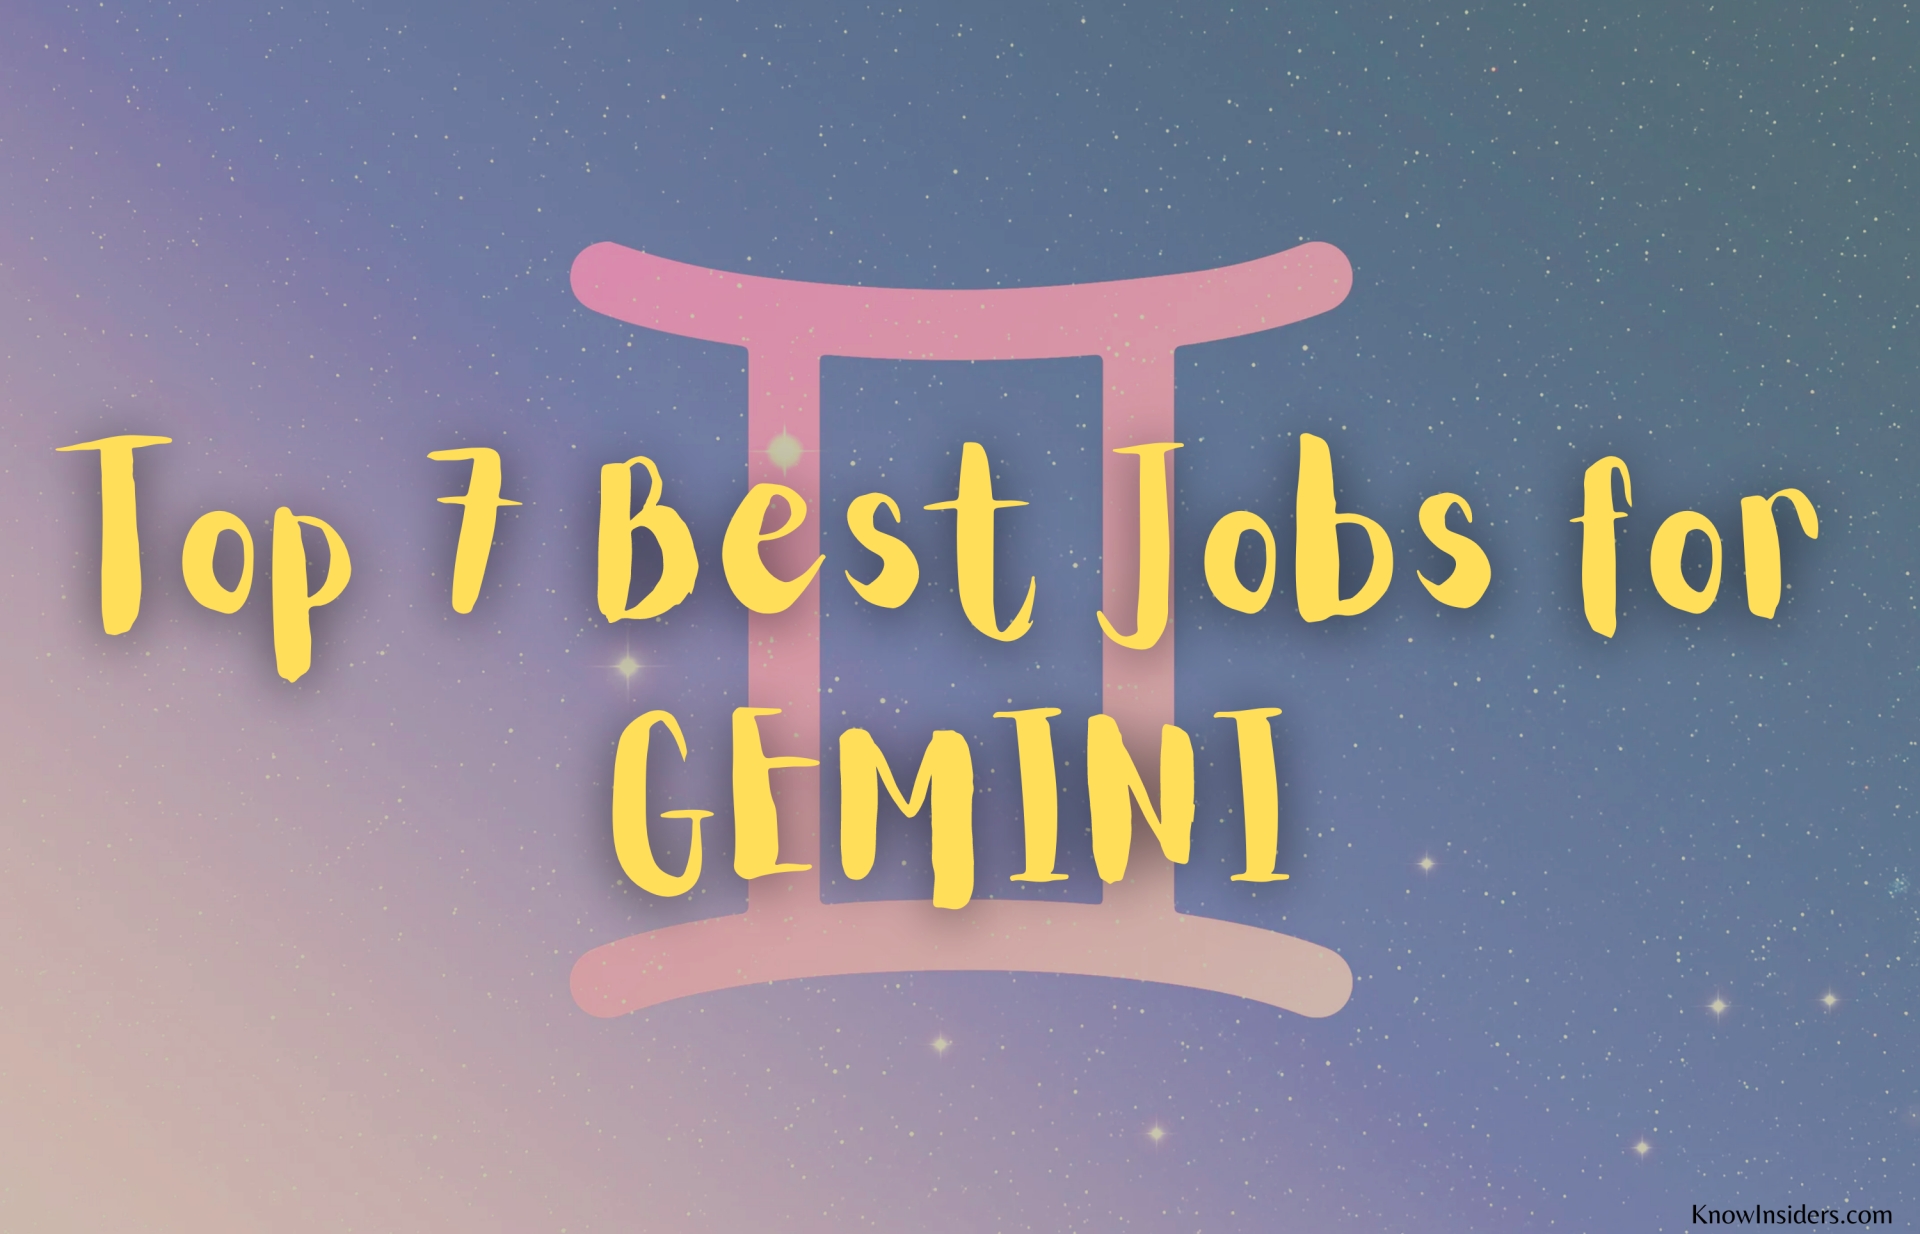 Top 7 Best Jobs for GEMINI - Career Guide Horoscope